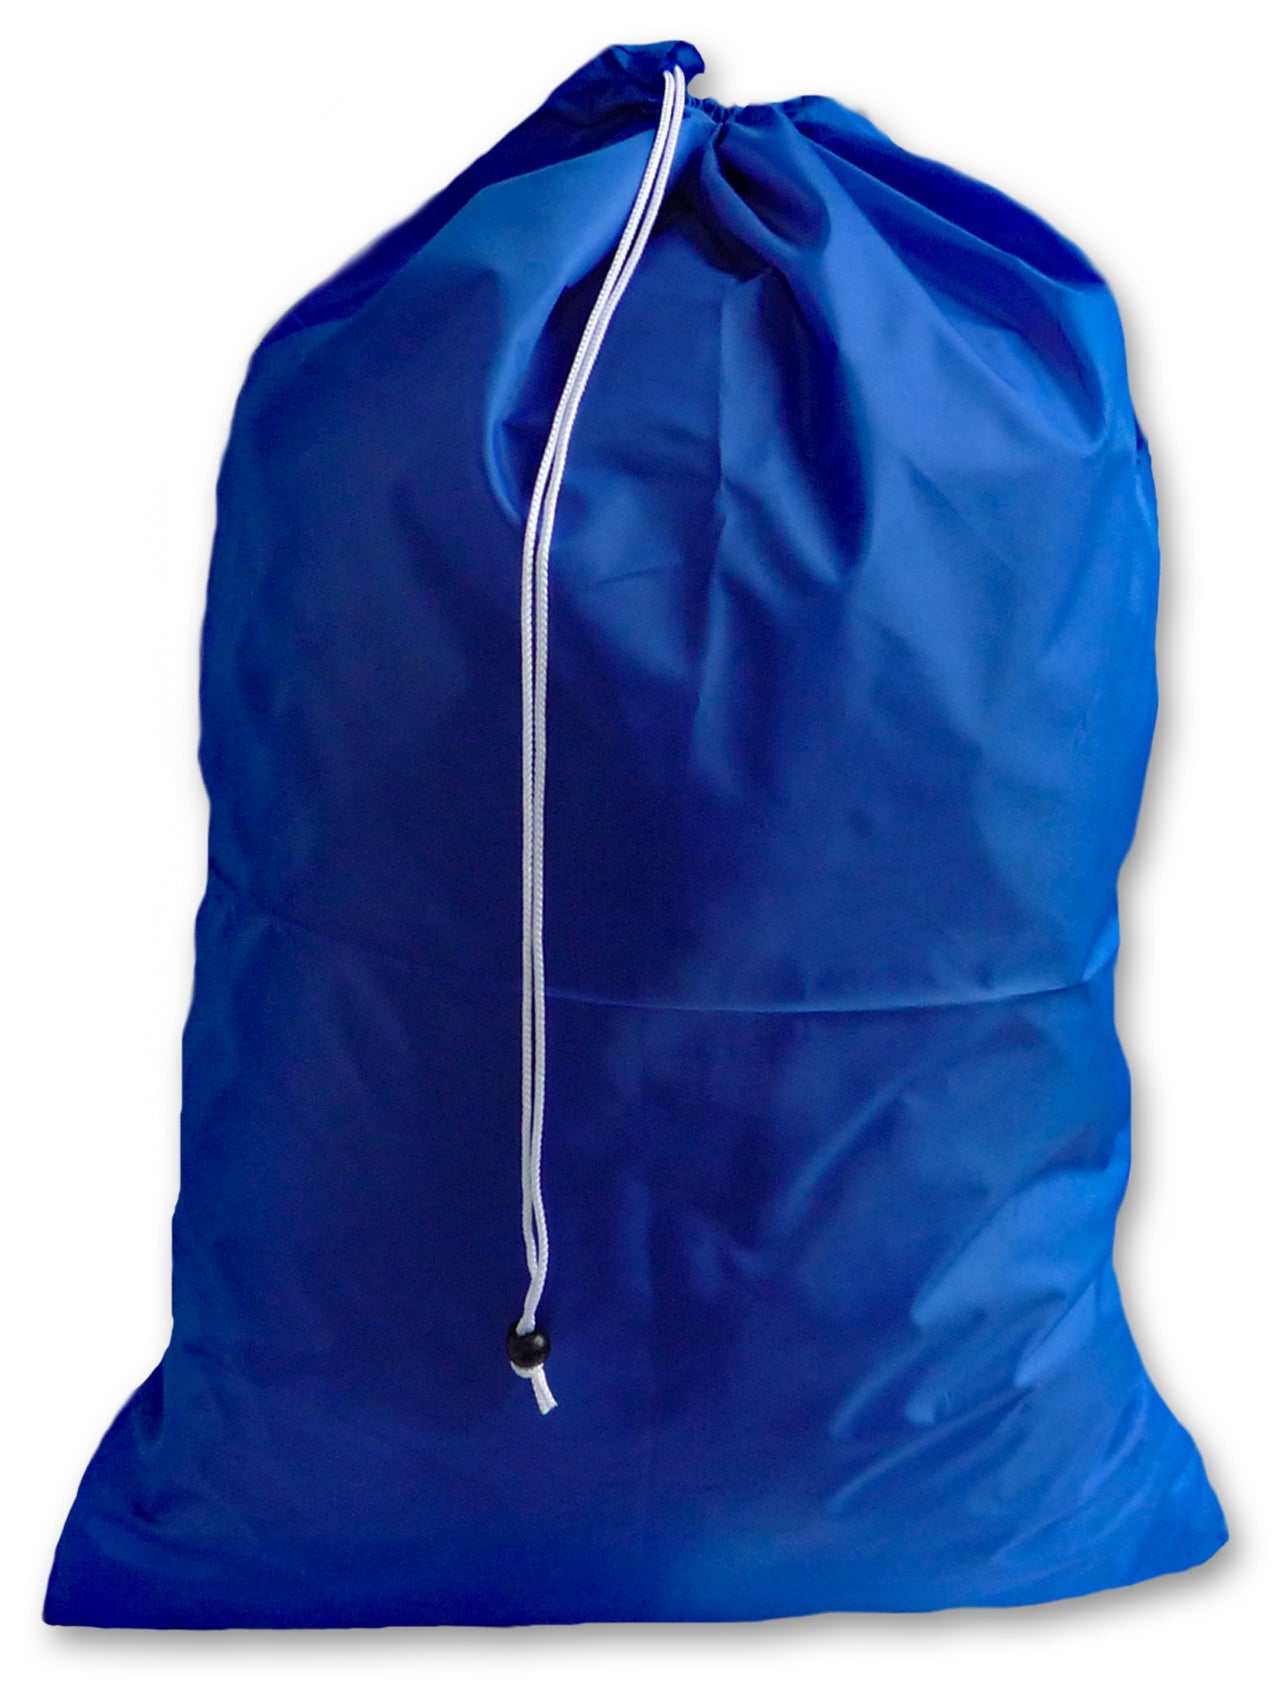 Extra Large Laundry Bag, Royal Blue